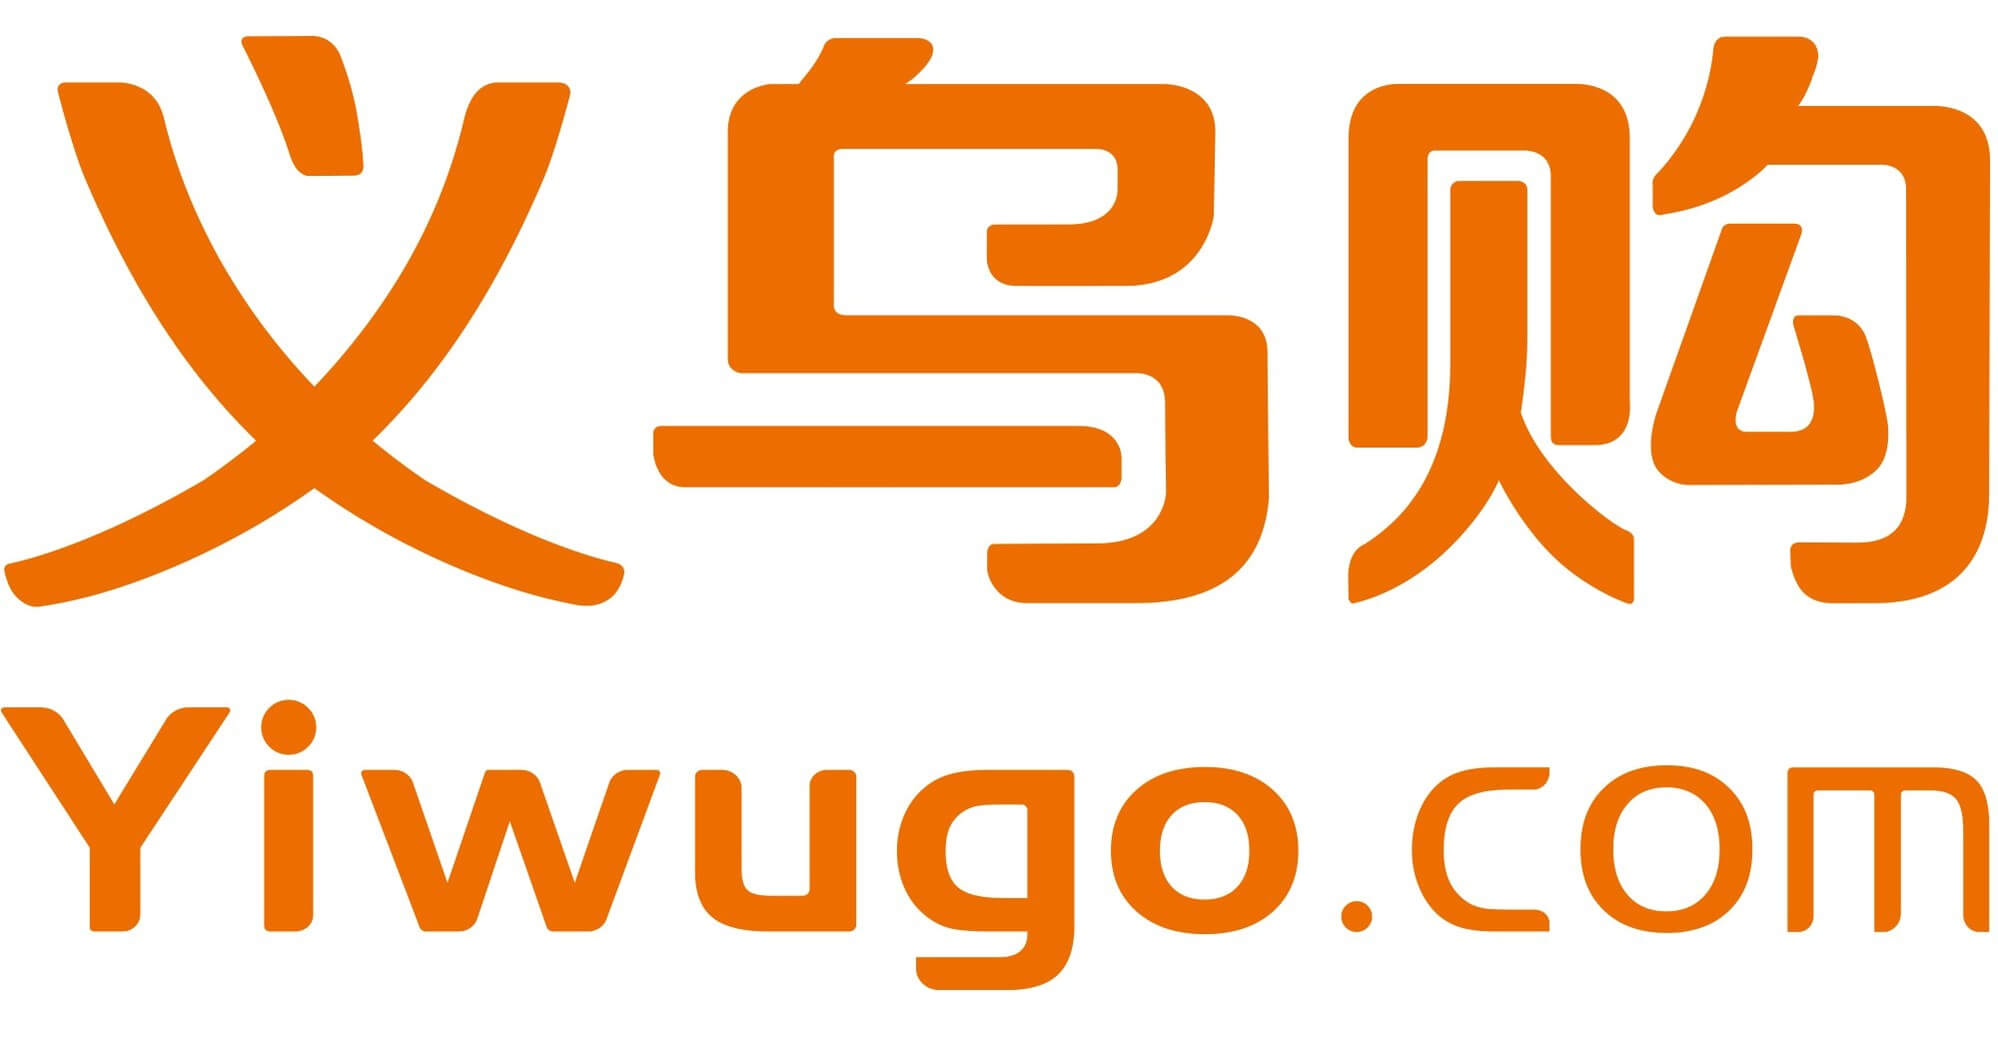 Acheter sur Yiwugo.com sans risques en 2024 : Tutoriel pas à pas